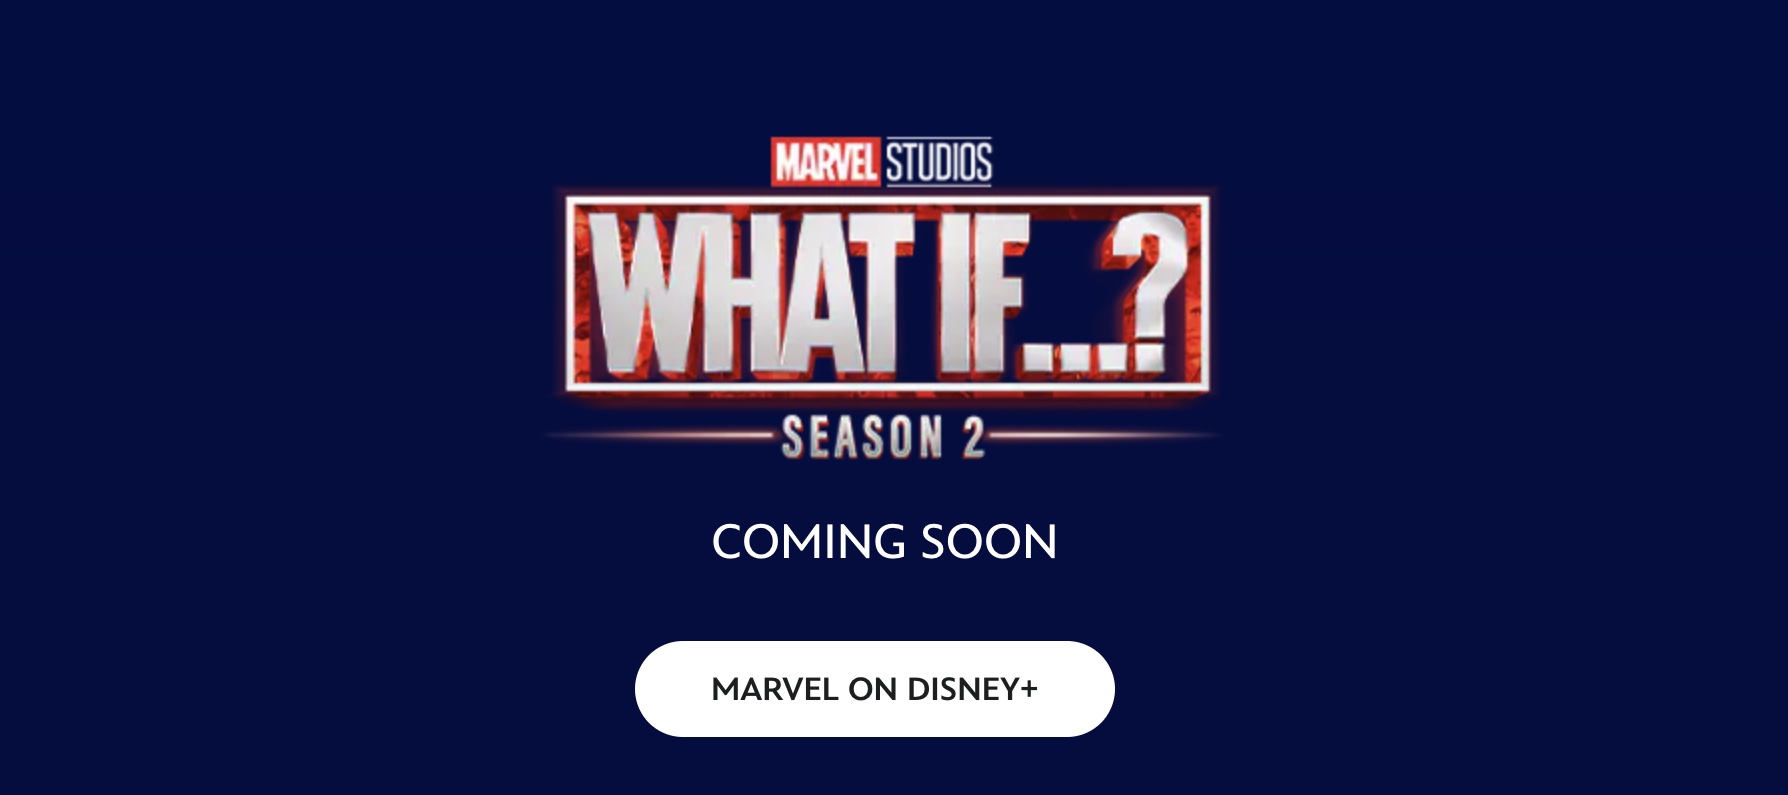 Marvel подтвердила перенос второго сезона сериала